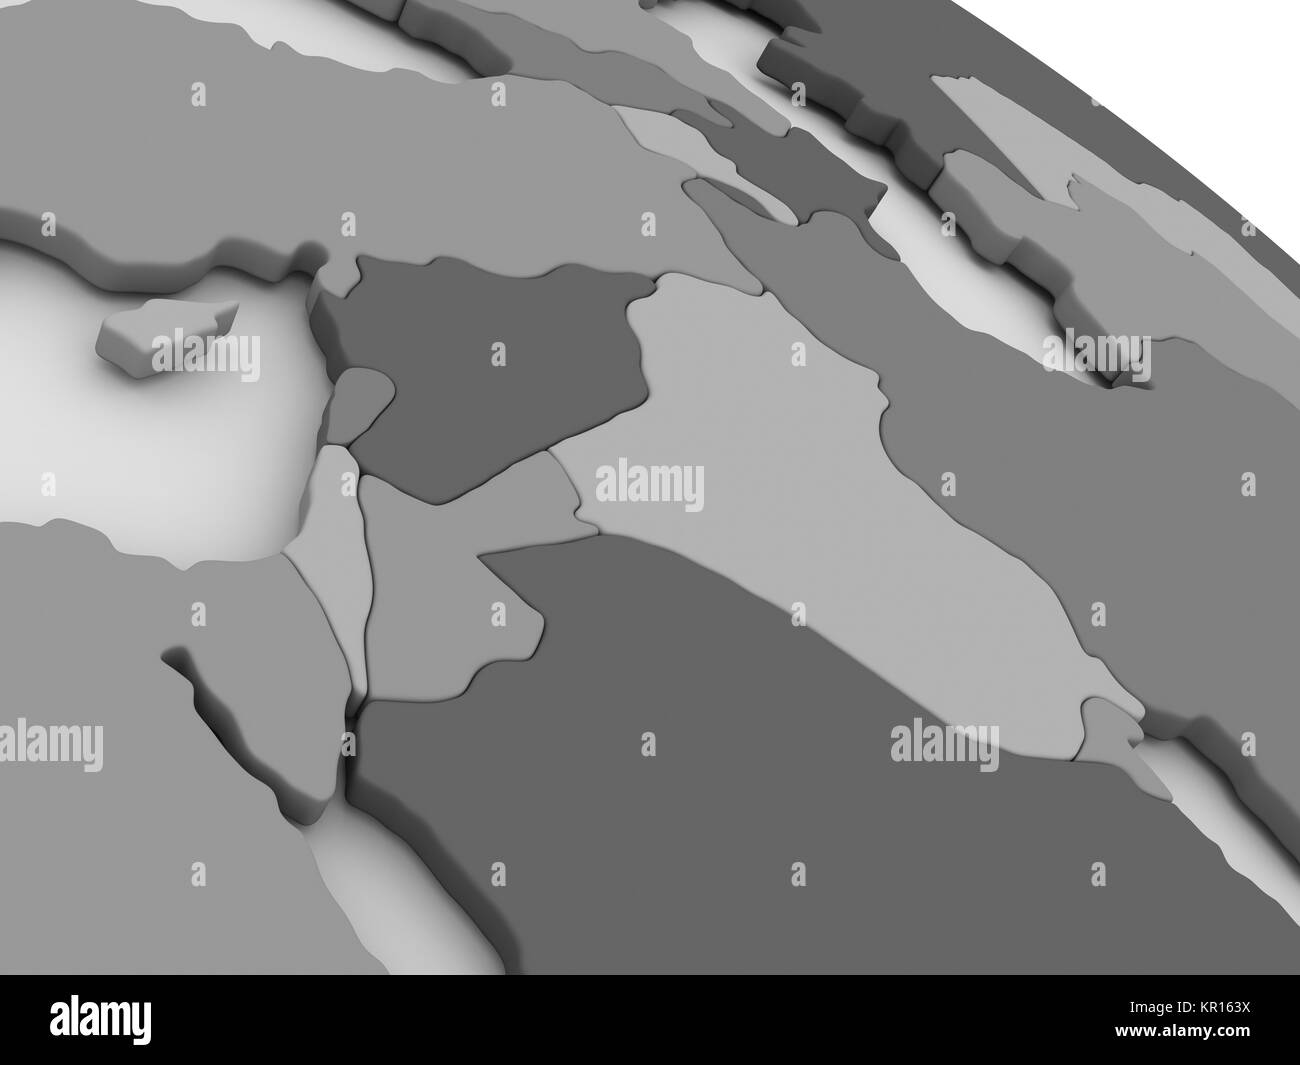 Israel, Libanon, Jordanien, Syrien und Irak Region auf grau 3D-Karte Stockfoto